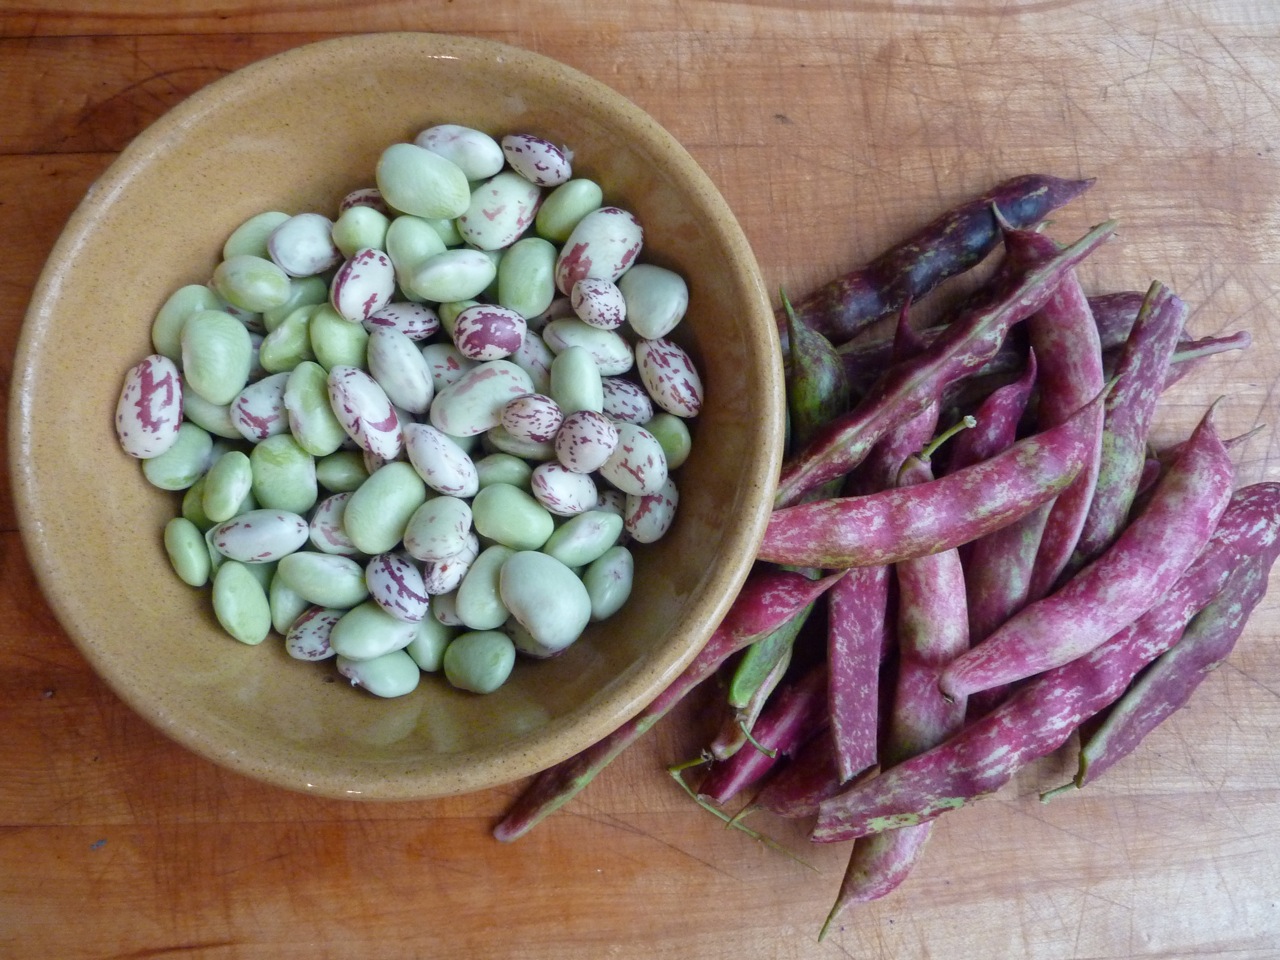 October - Freshly podded borlotti beans